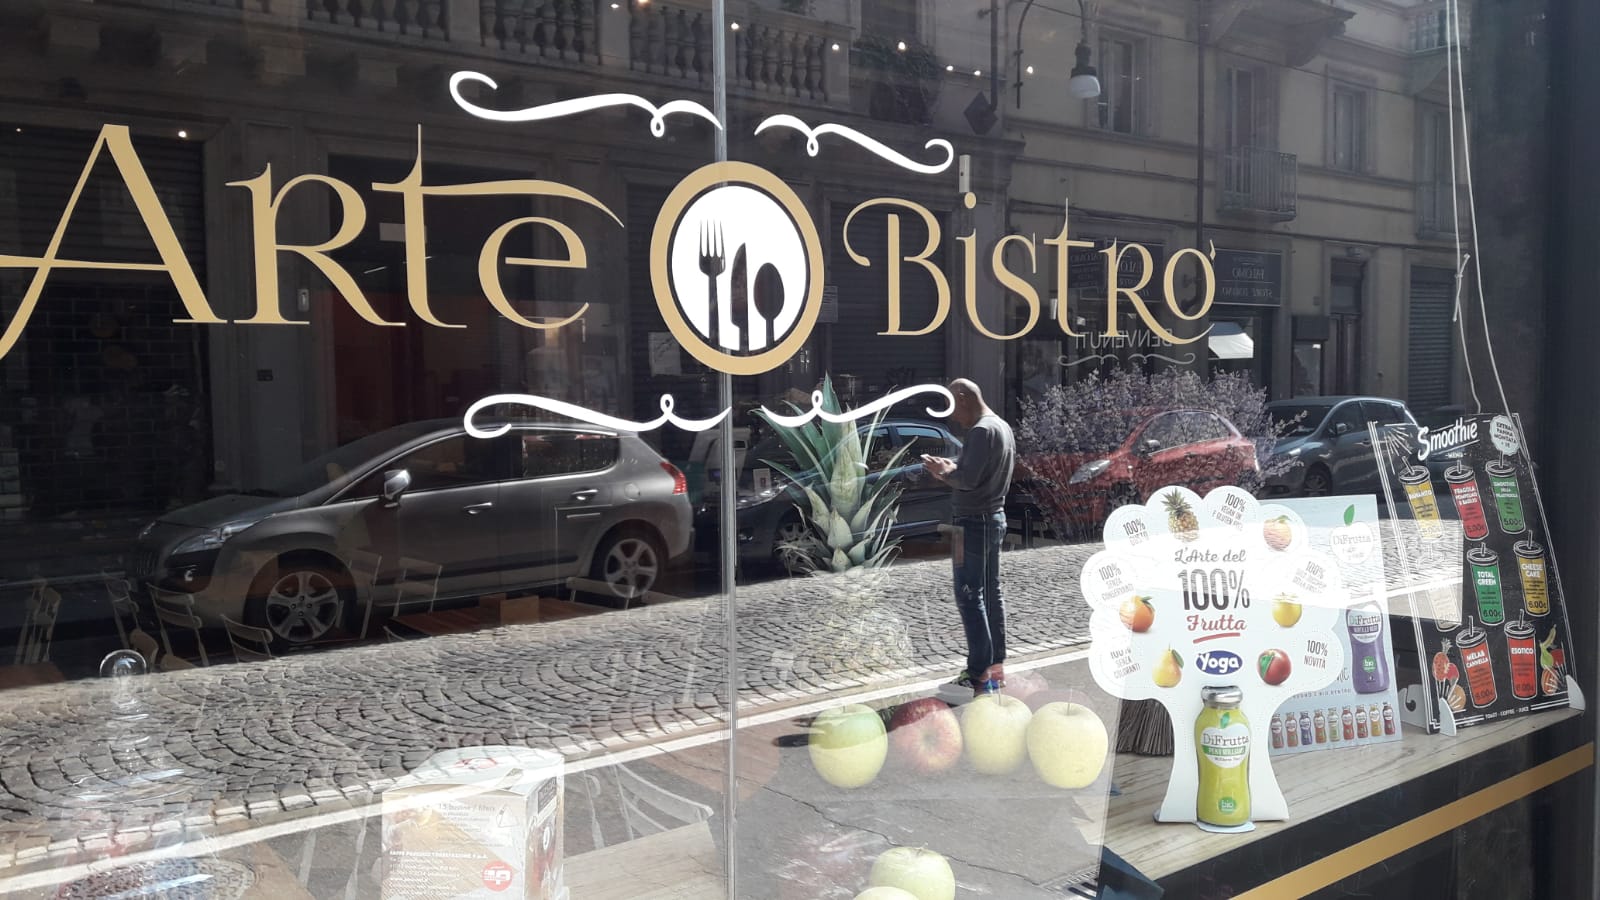 Dove mangiare toast a Torino? Da ArteBistro ovviamente!